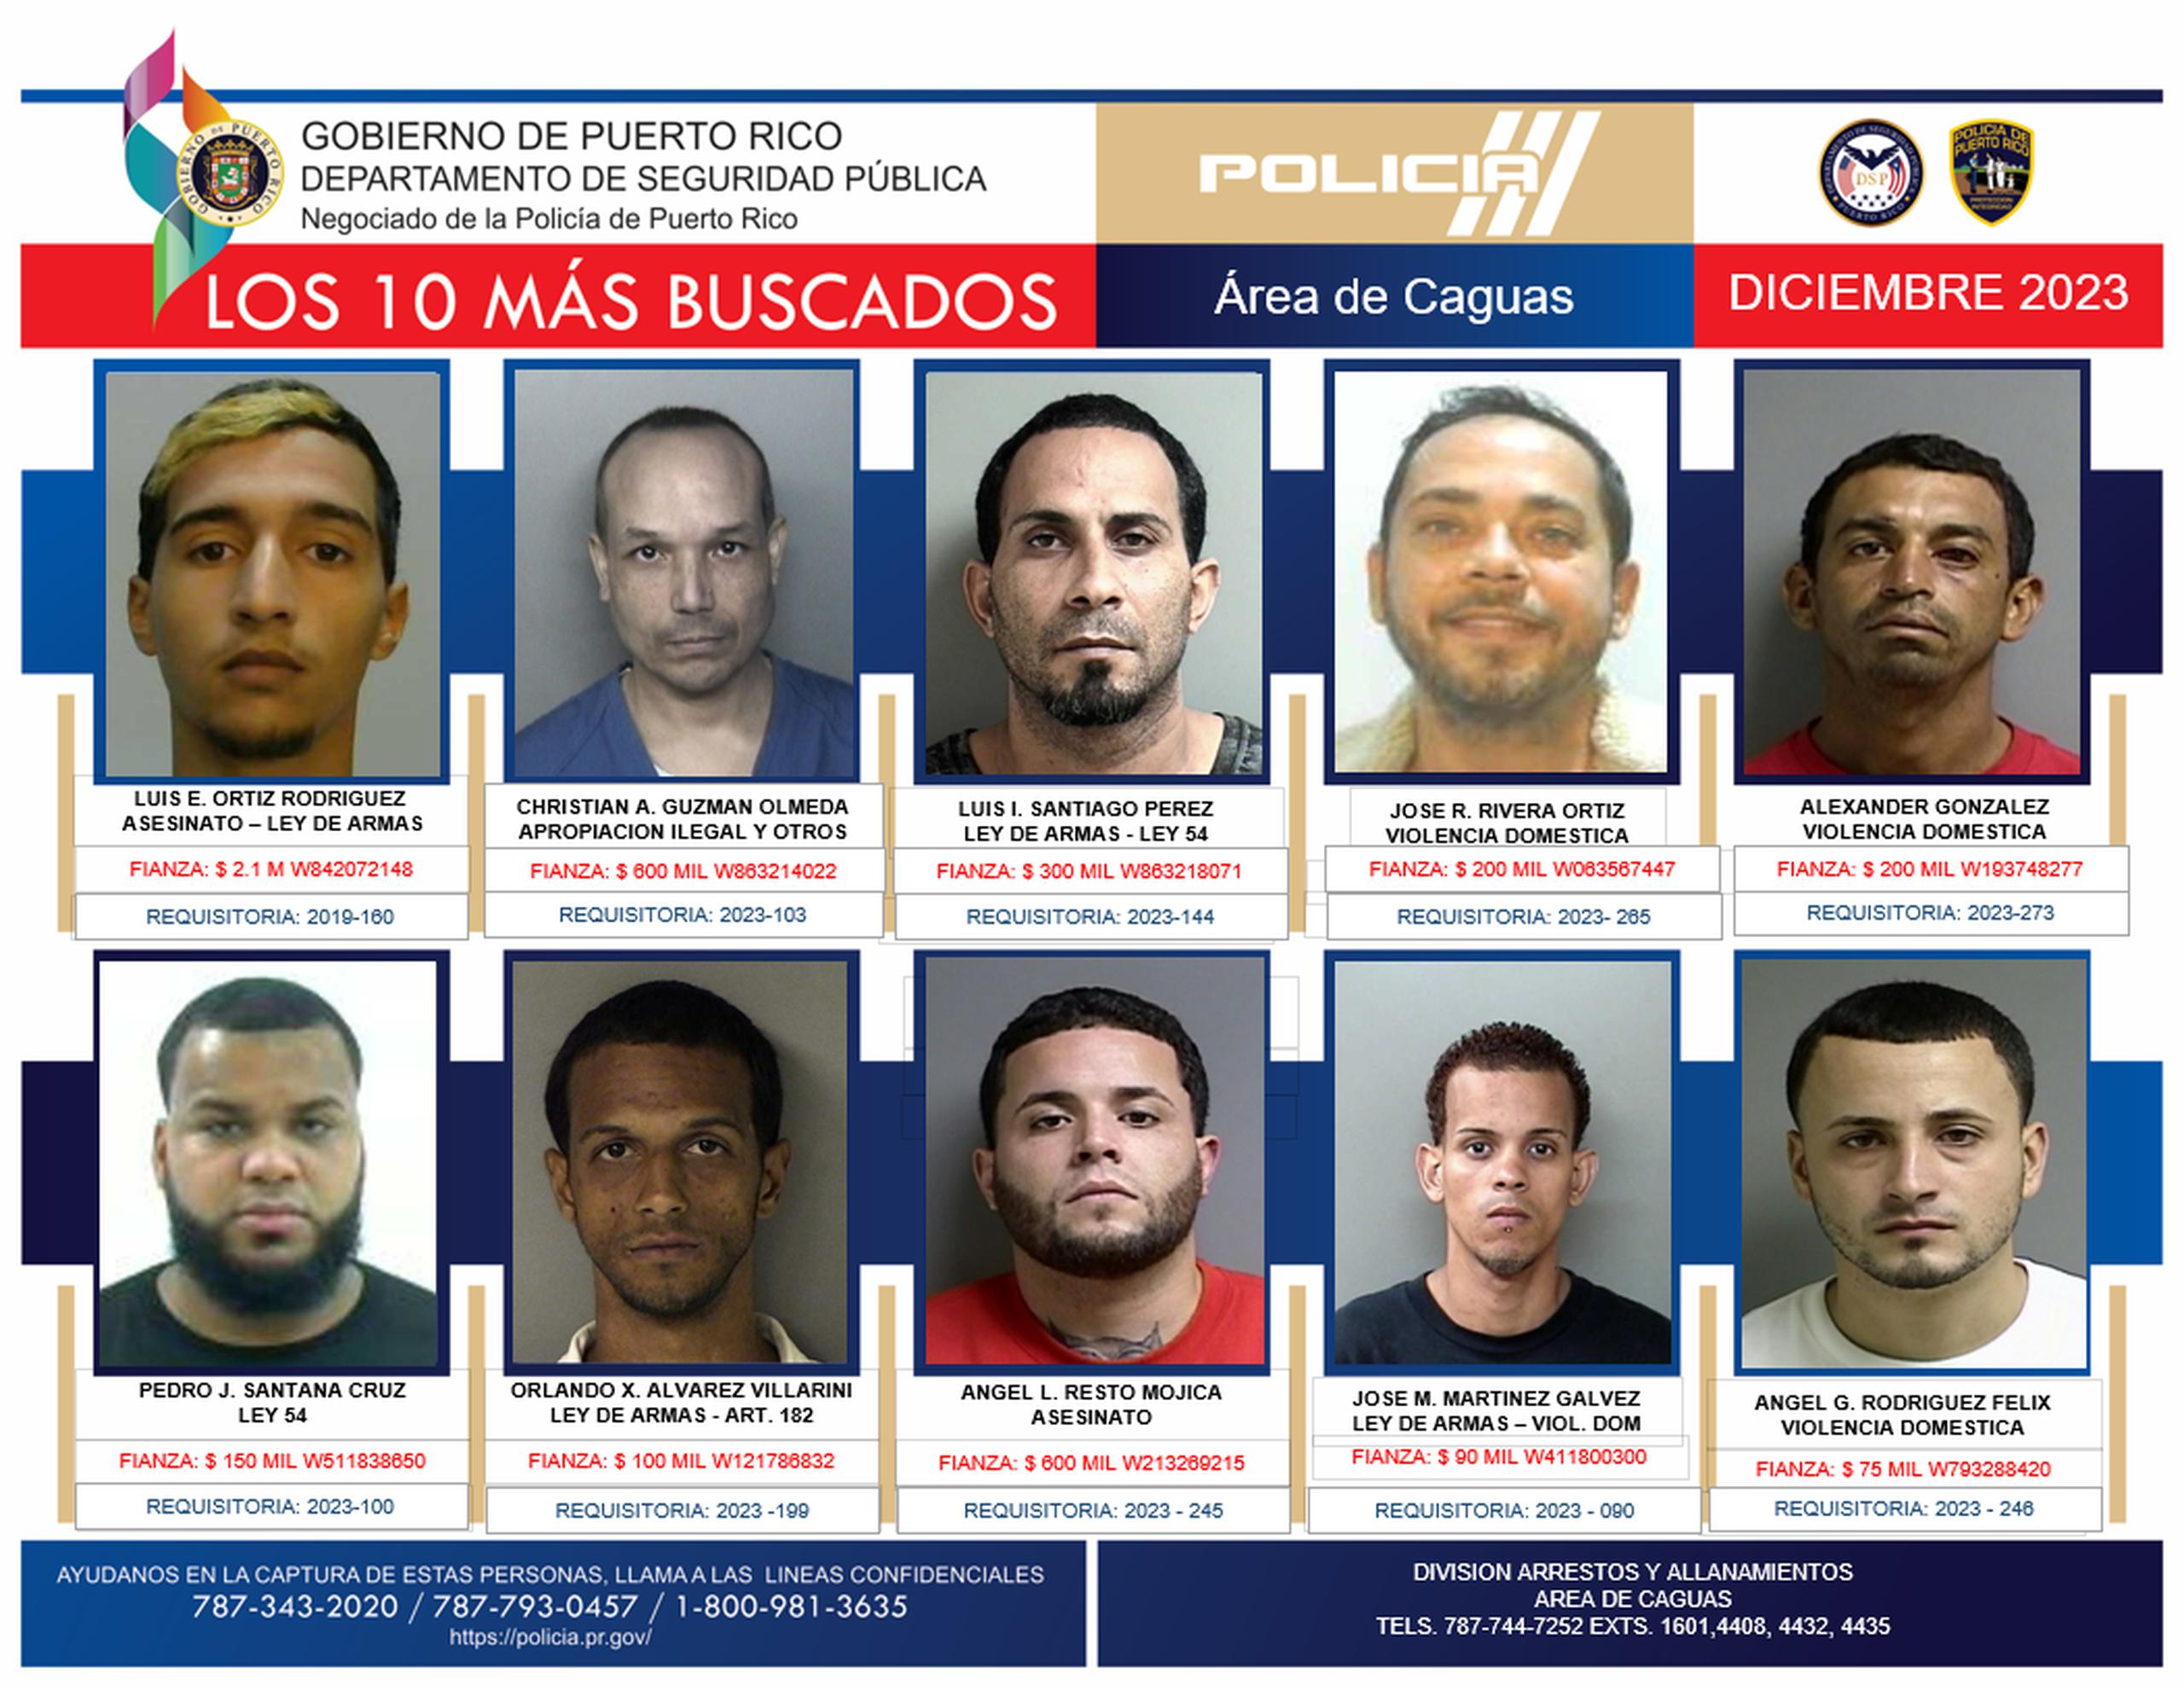 José M. Martínez Galvez figuraba noveno en la lista de los 10 más buscados de la zona policíaca de Caguas.